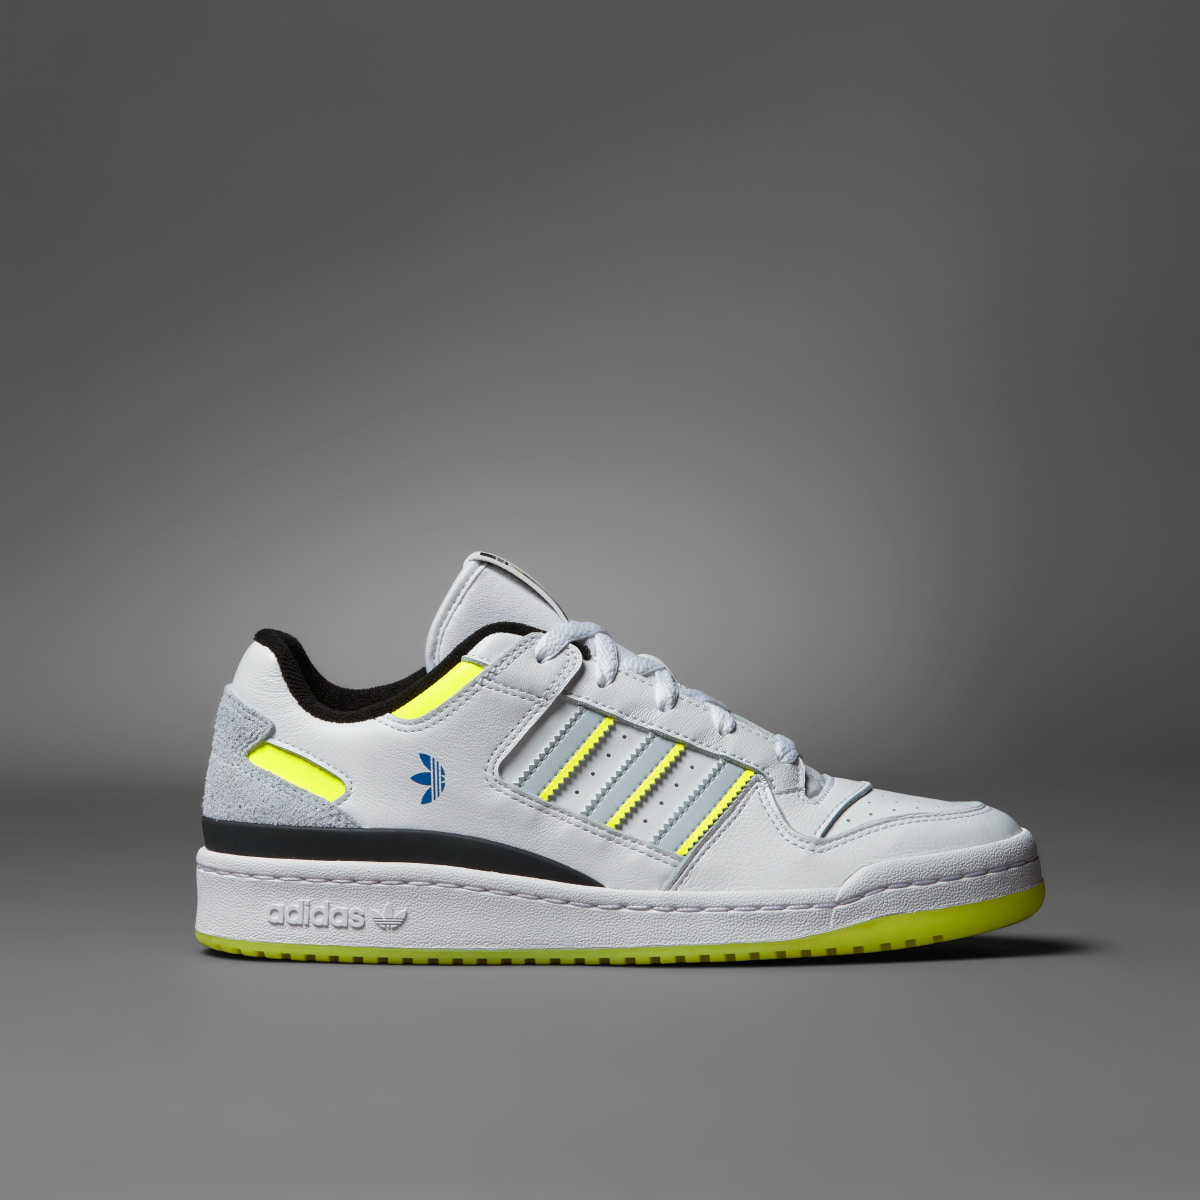 Adidas Scarpe Forum Low CL x Indigo Herz. 4